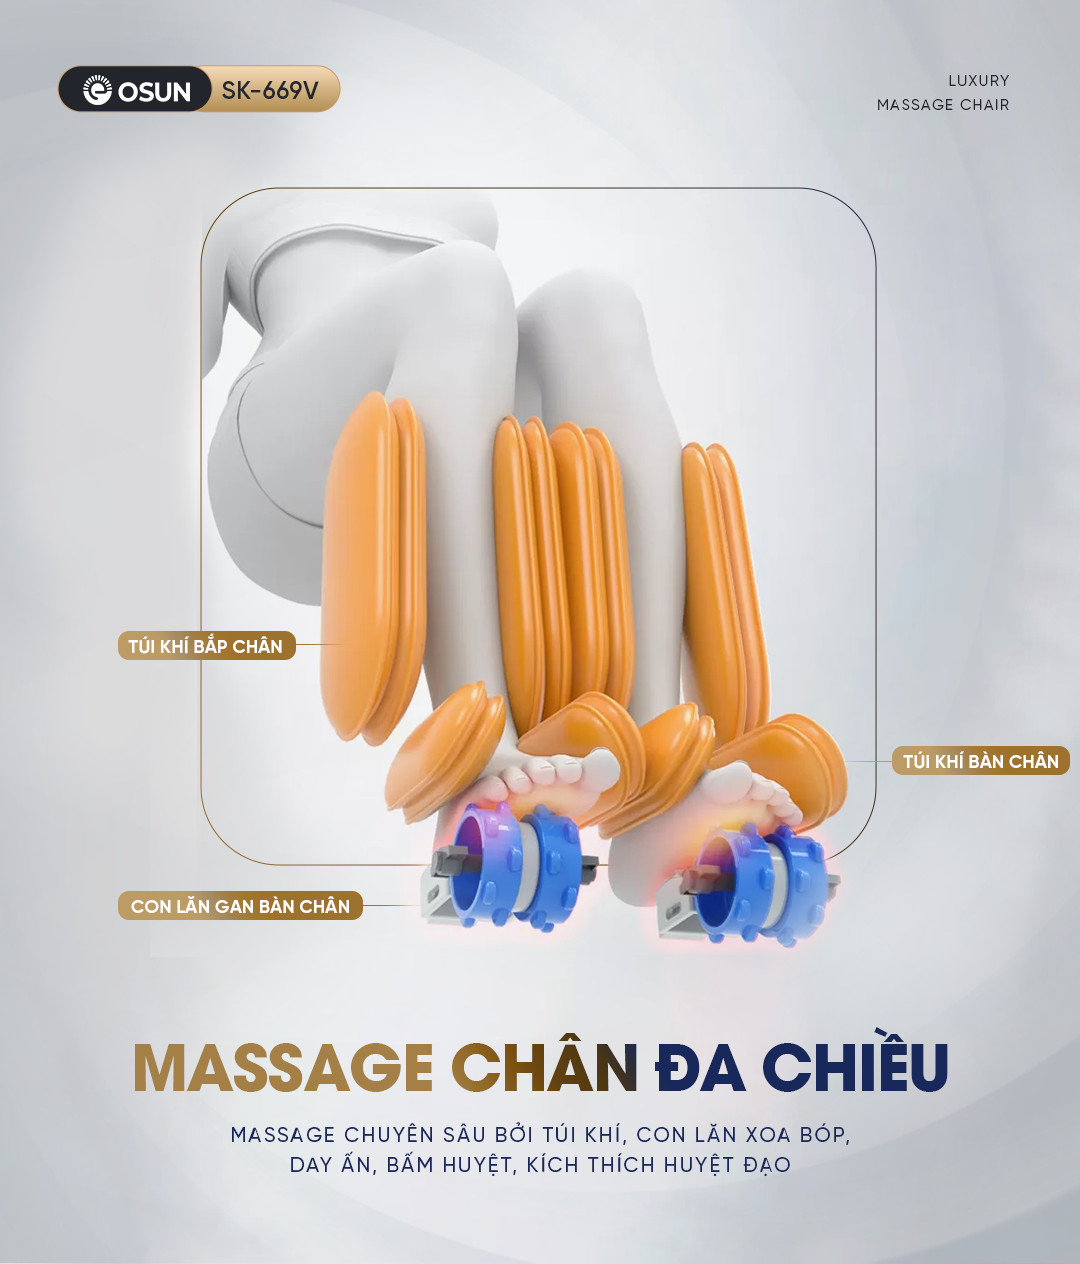 Massage chân chuyên sâu tiện ích